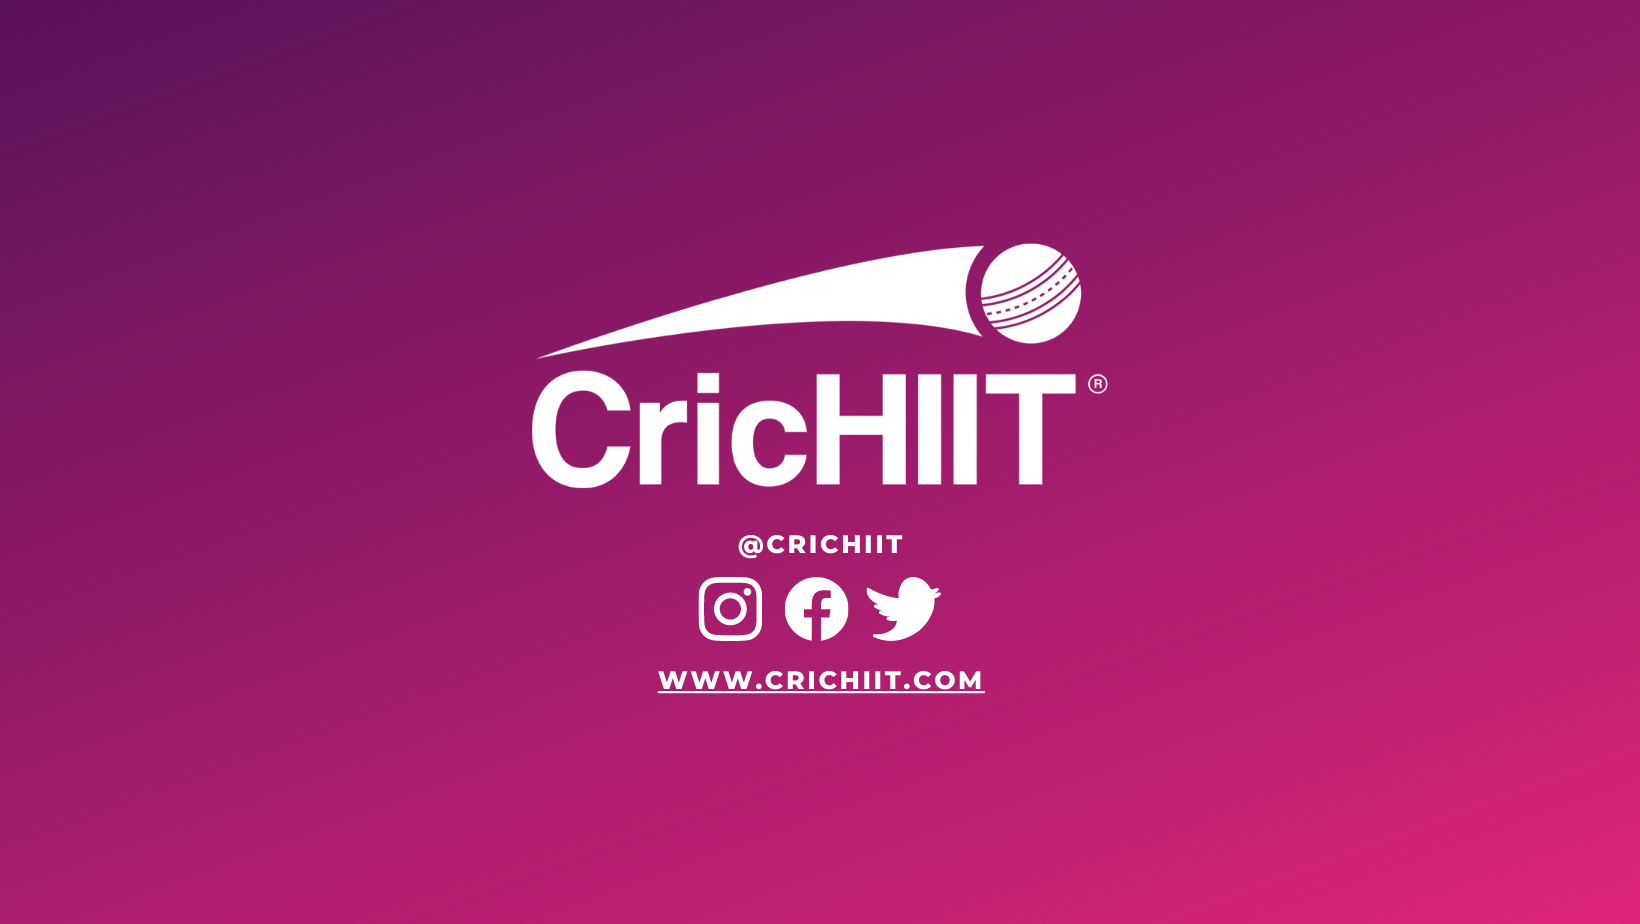 CricHIIT launches globally